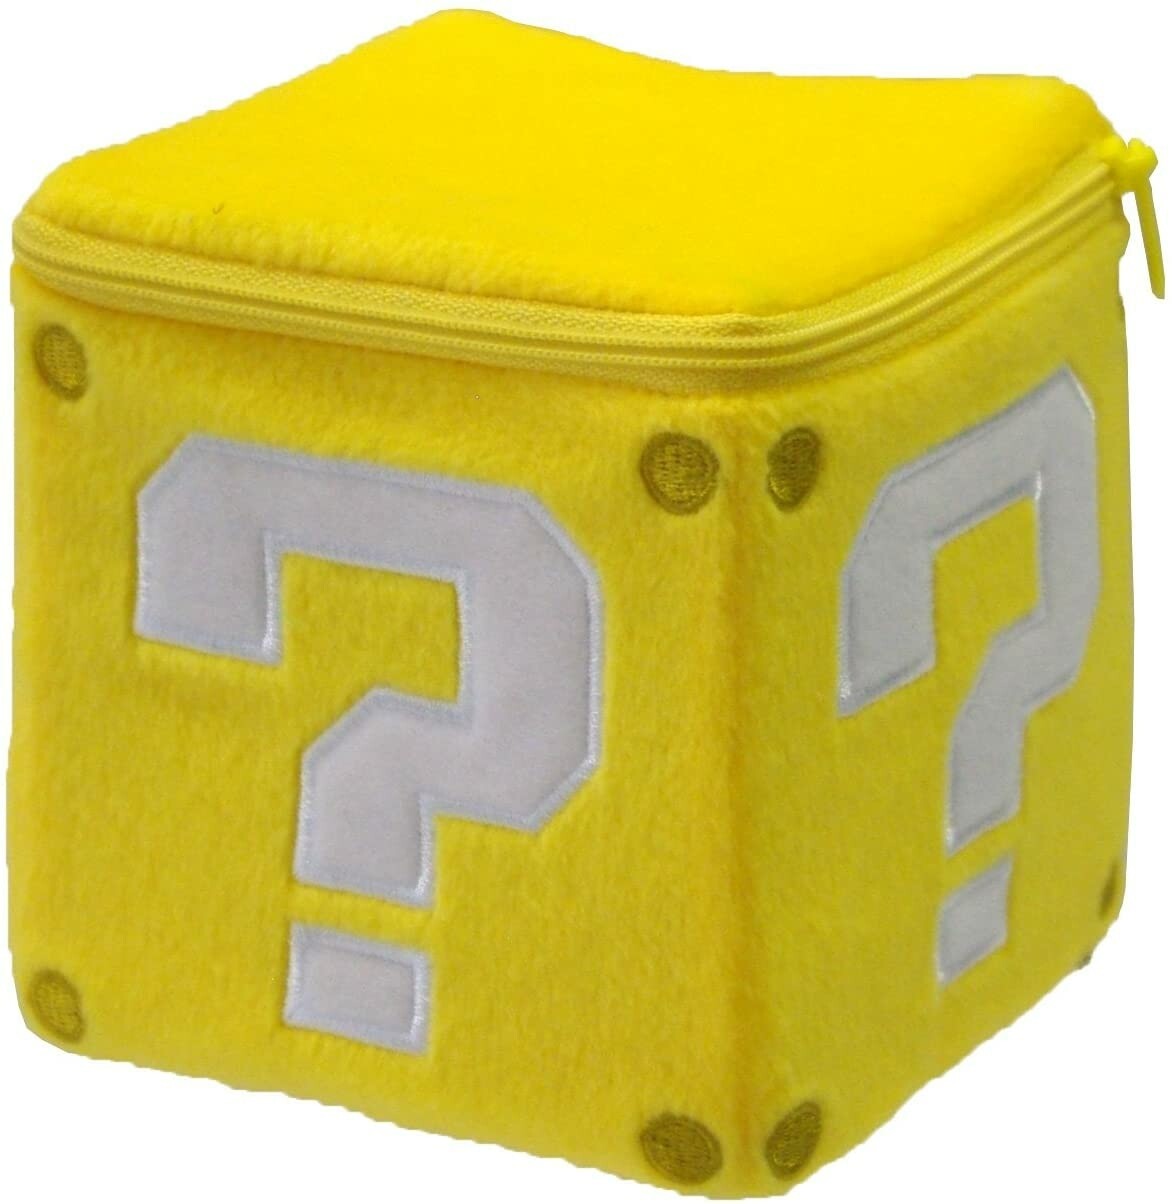 Super Mario Zipper Mystery box Plush